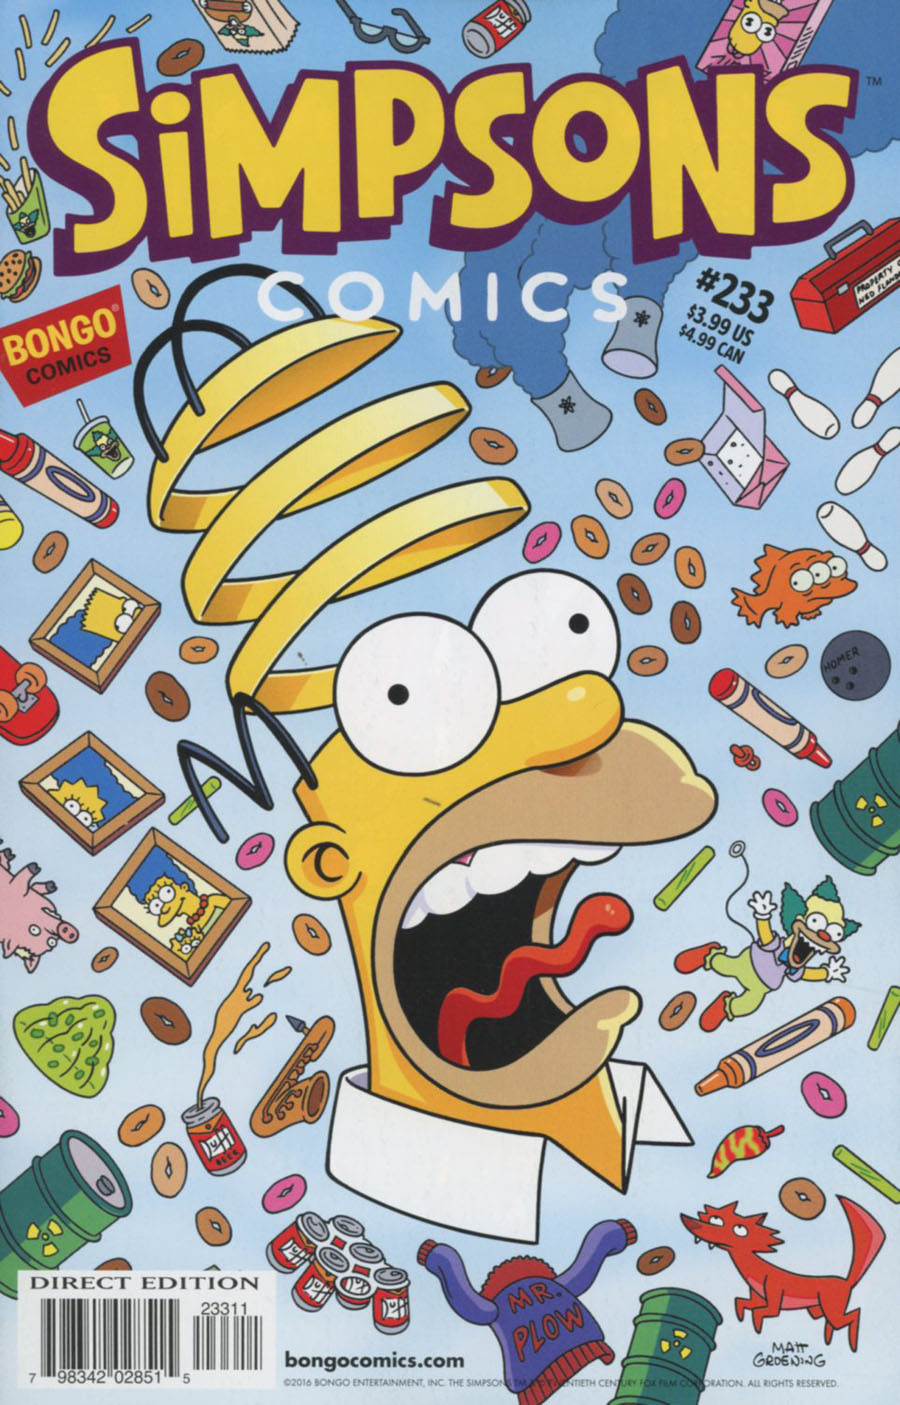 Simpsons Comics #233